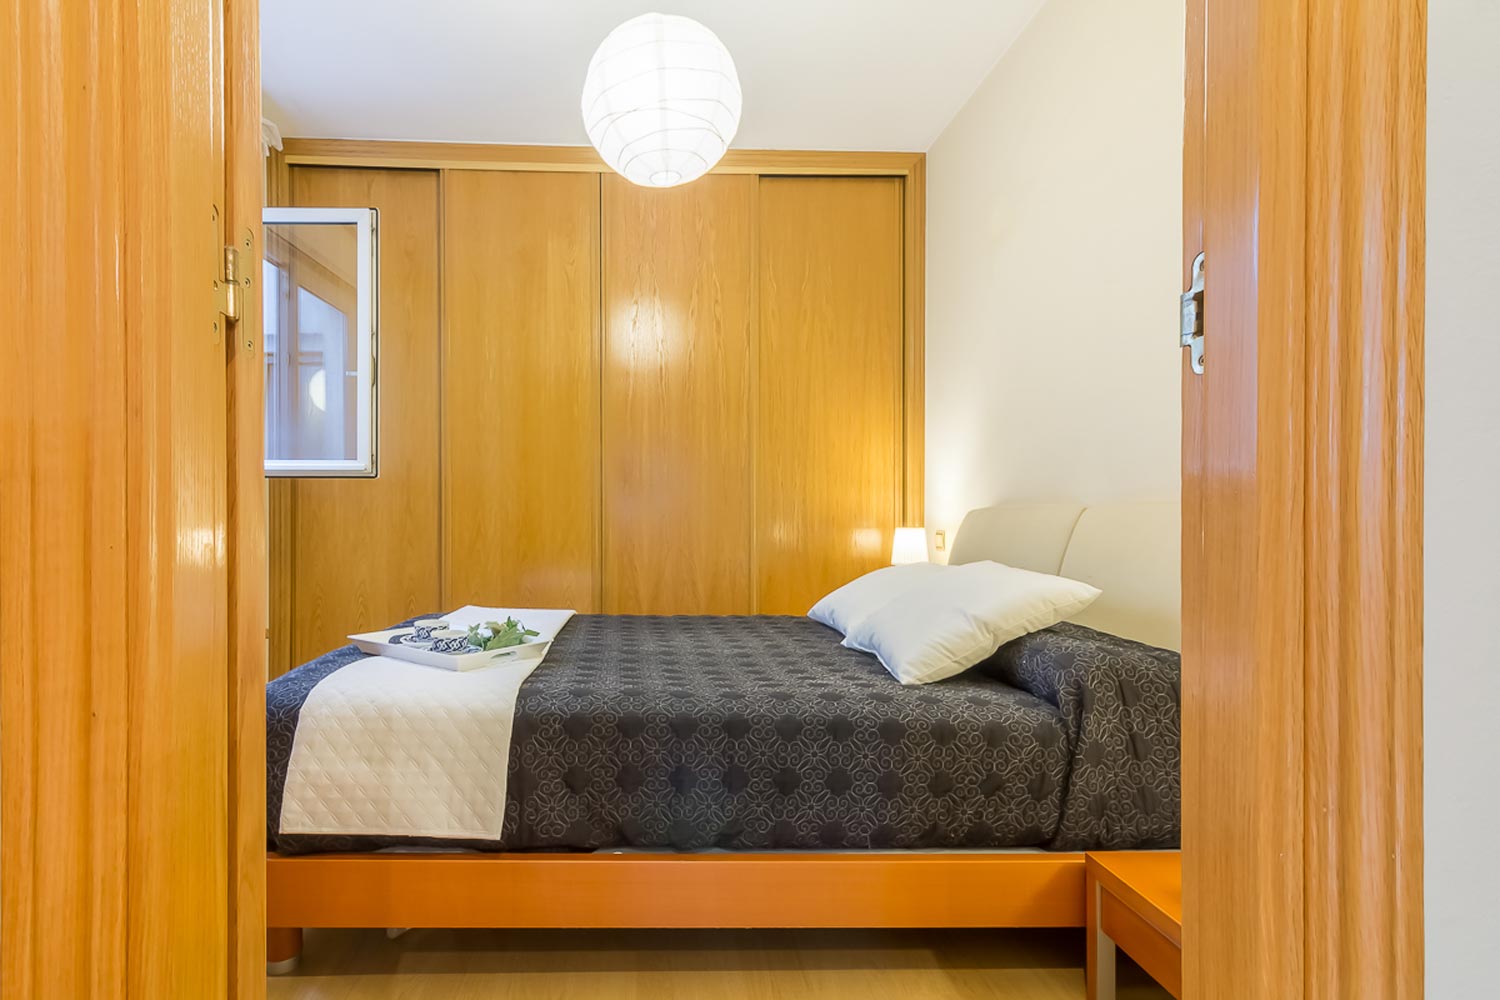 Dormitorio principal con Home Staging_ armario empotrado pared del fondo y cama de matrimonio con colcha gris y cojines blancos_ bandeja de desayuno sobre la cama